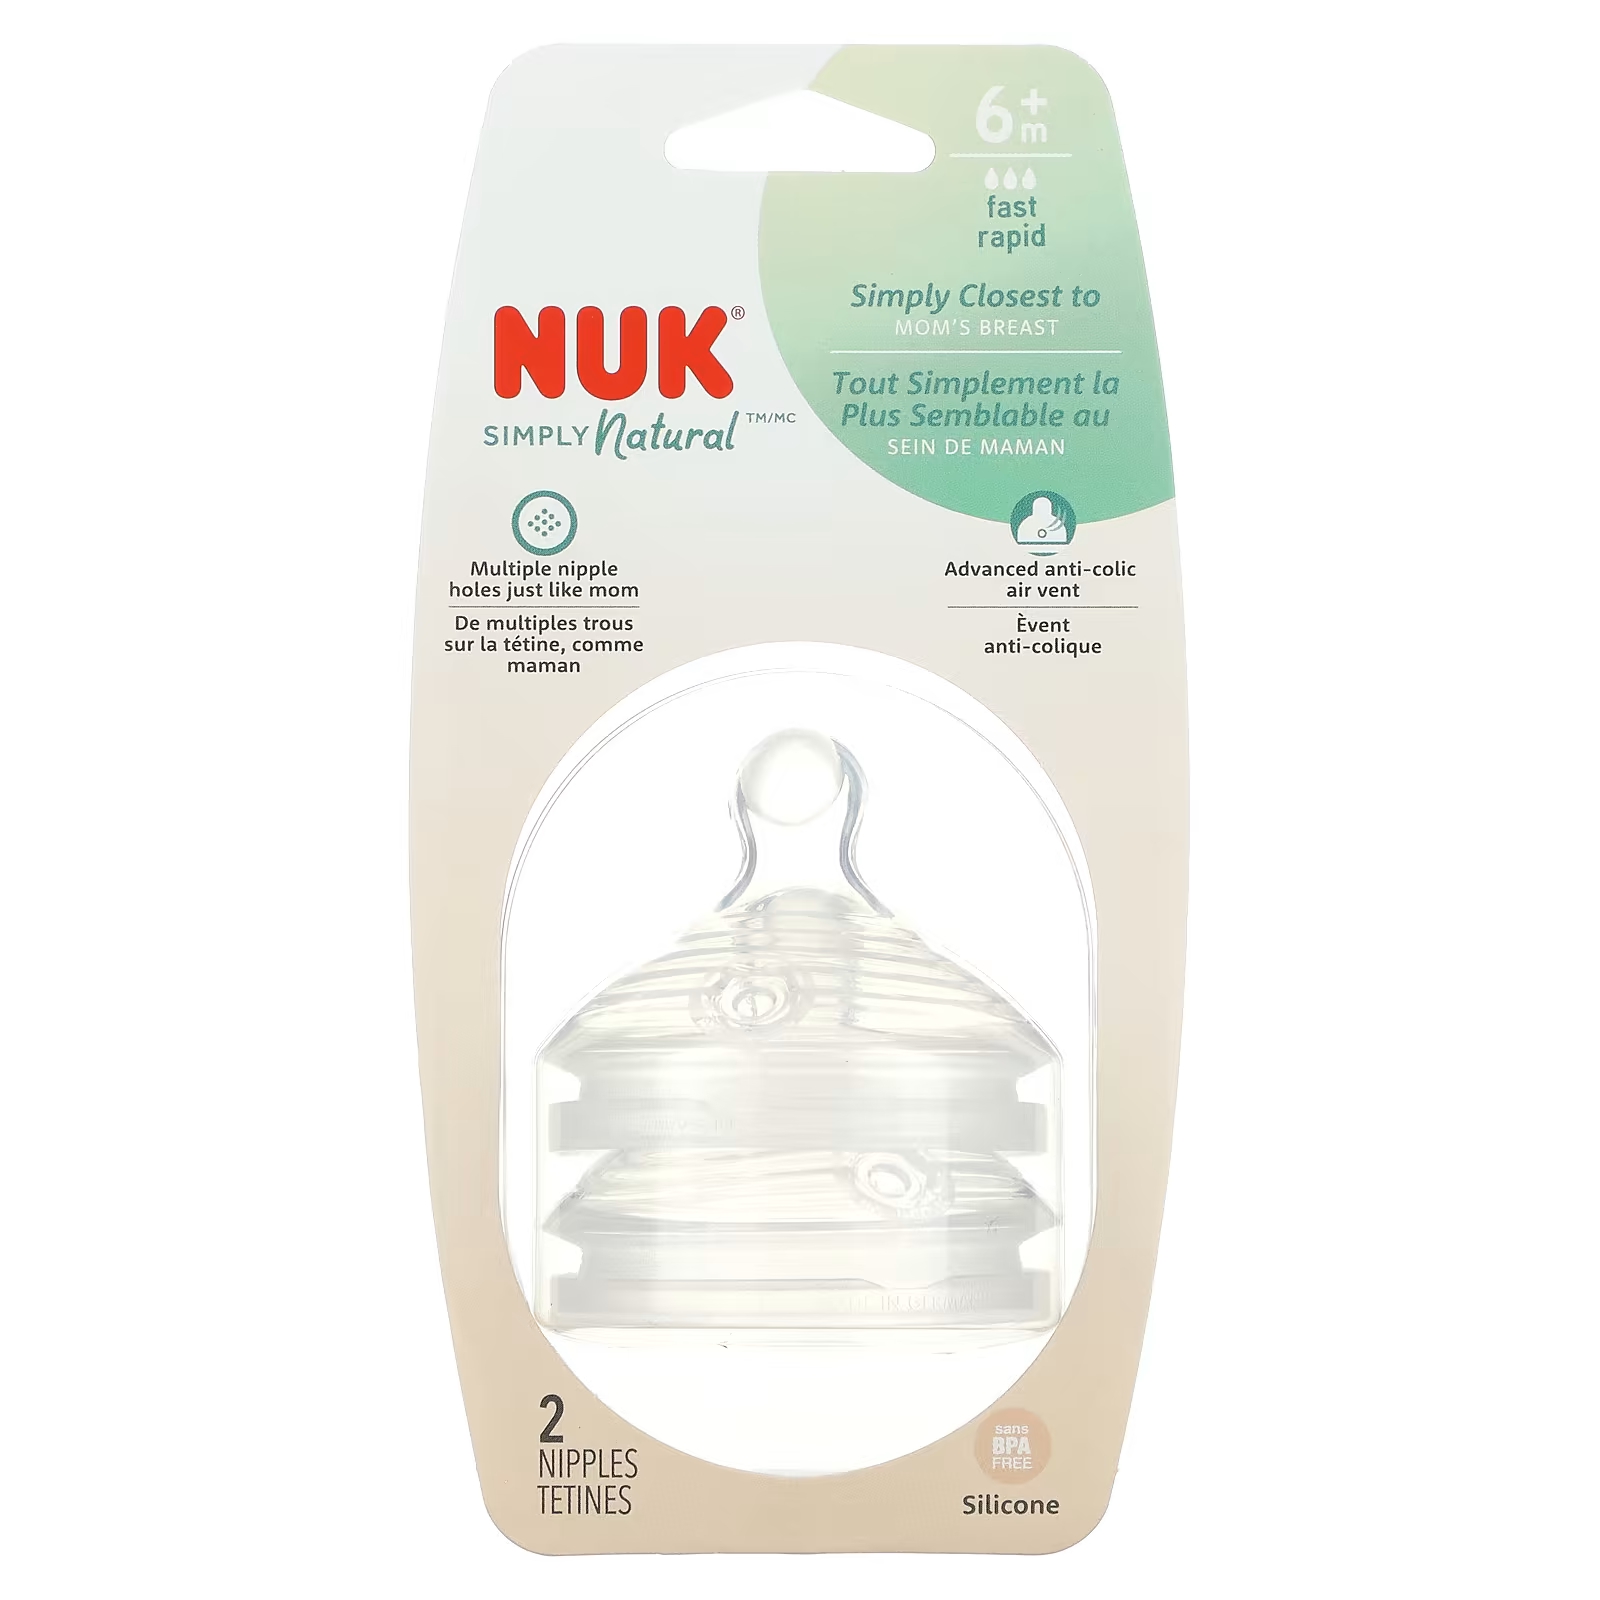 Соски NUK Simply Natural от 6 месяцев nuk миски с присосками для детей от 6 месяцев синие и зеленые 2 чаши 2 крышки